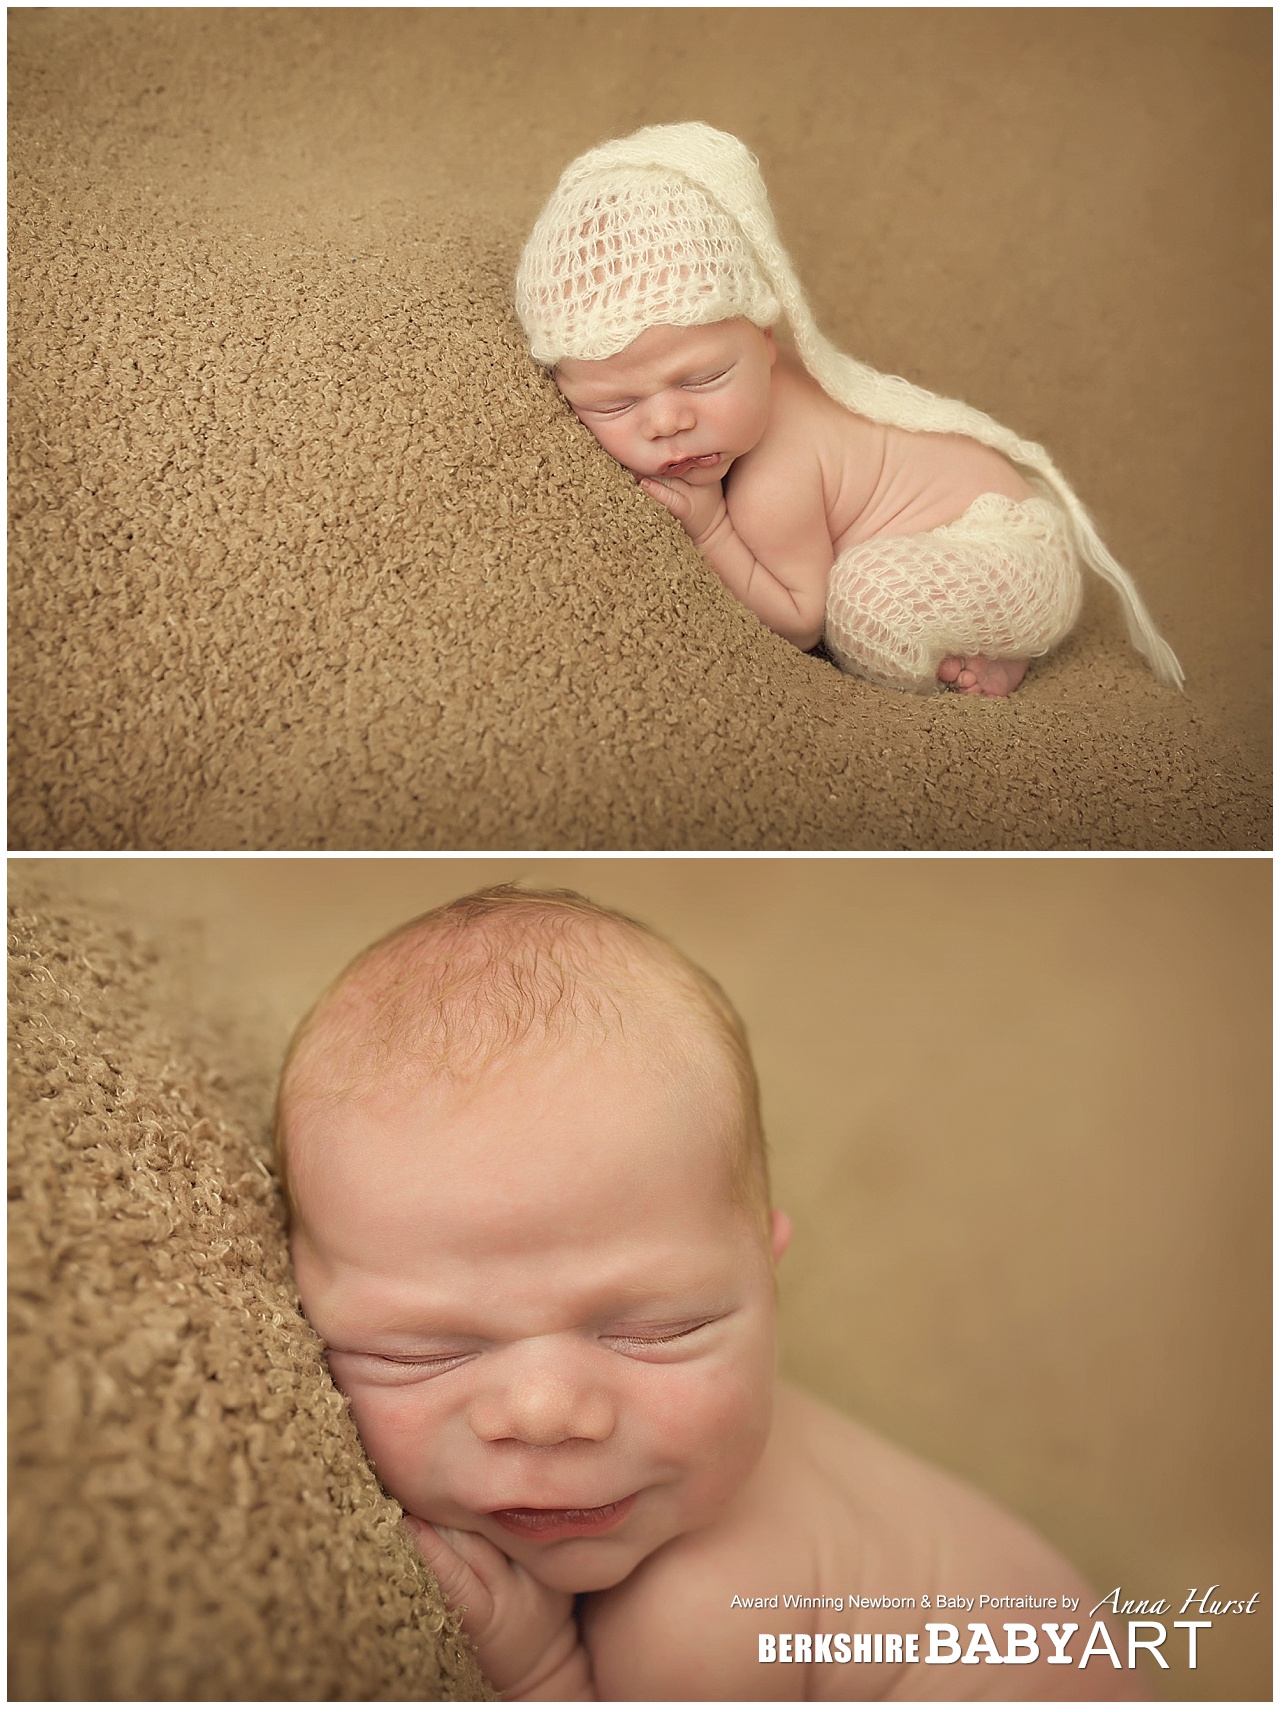 Virginia Waters Newborn Baby Photography